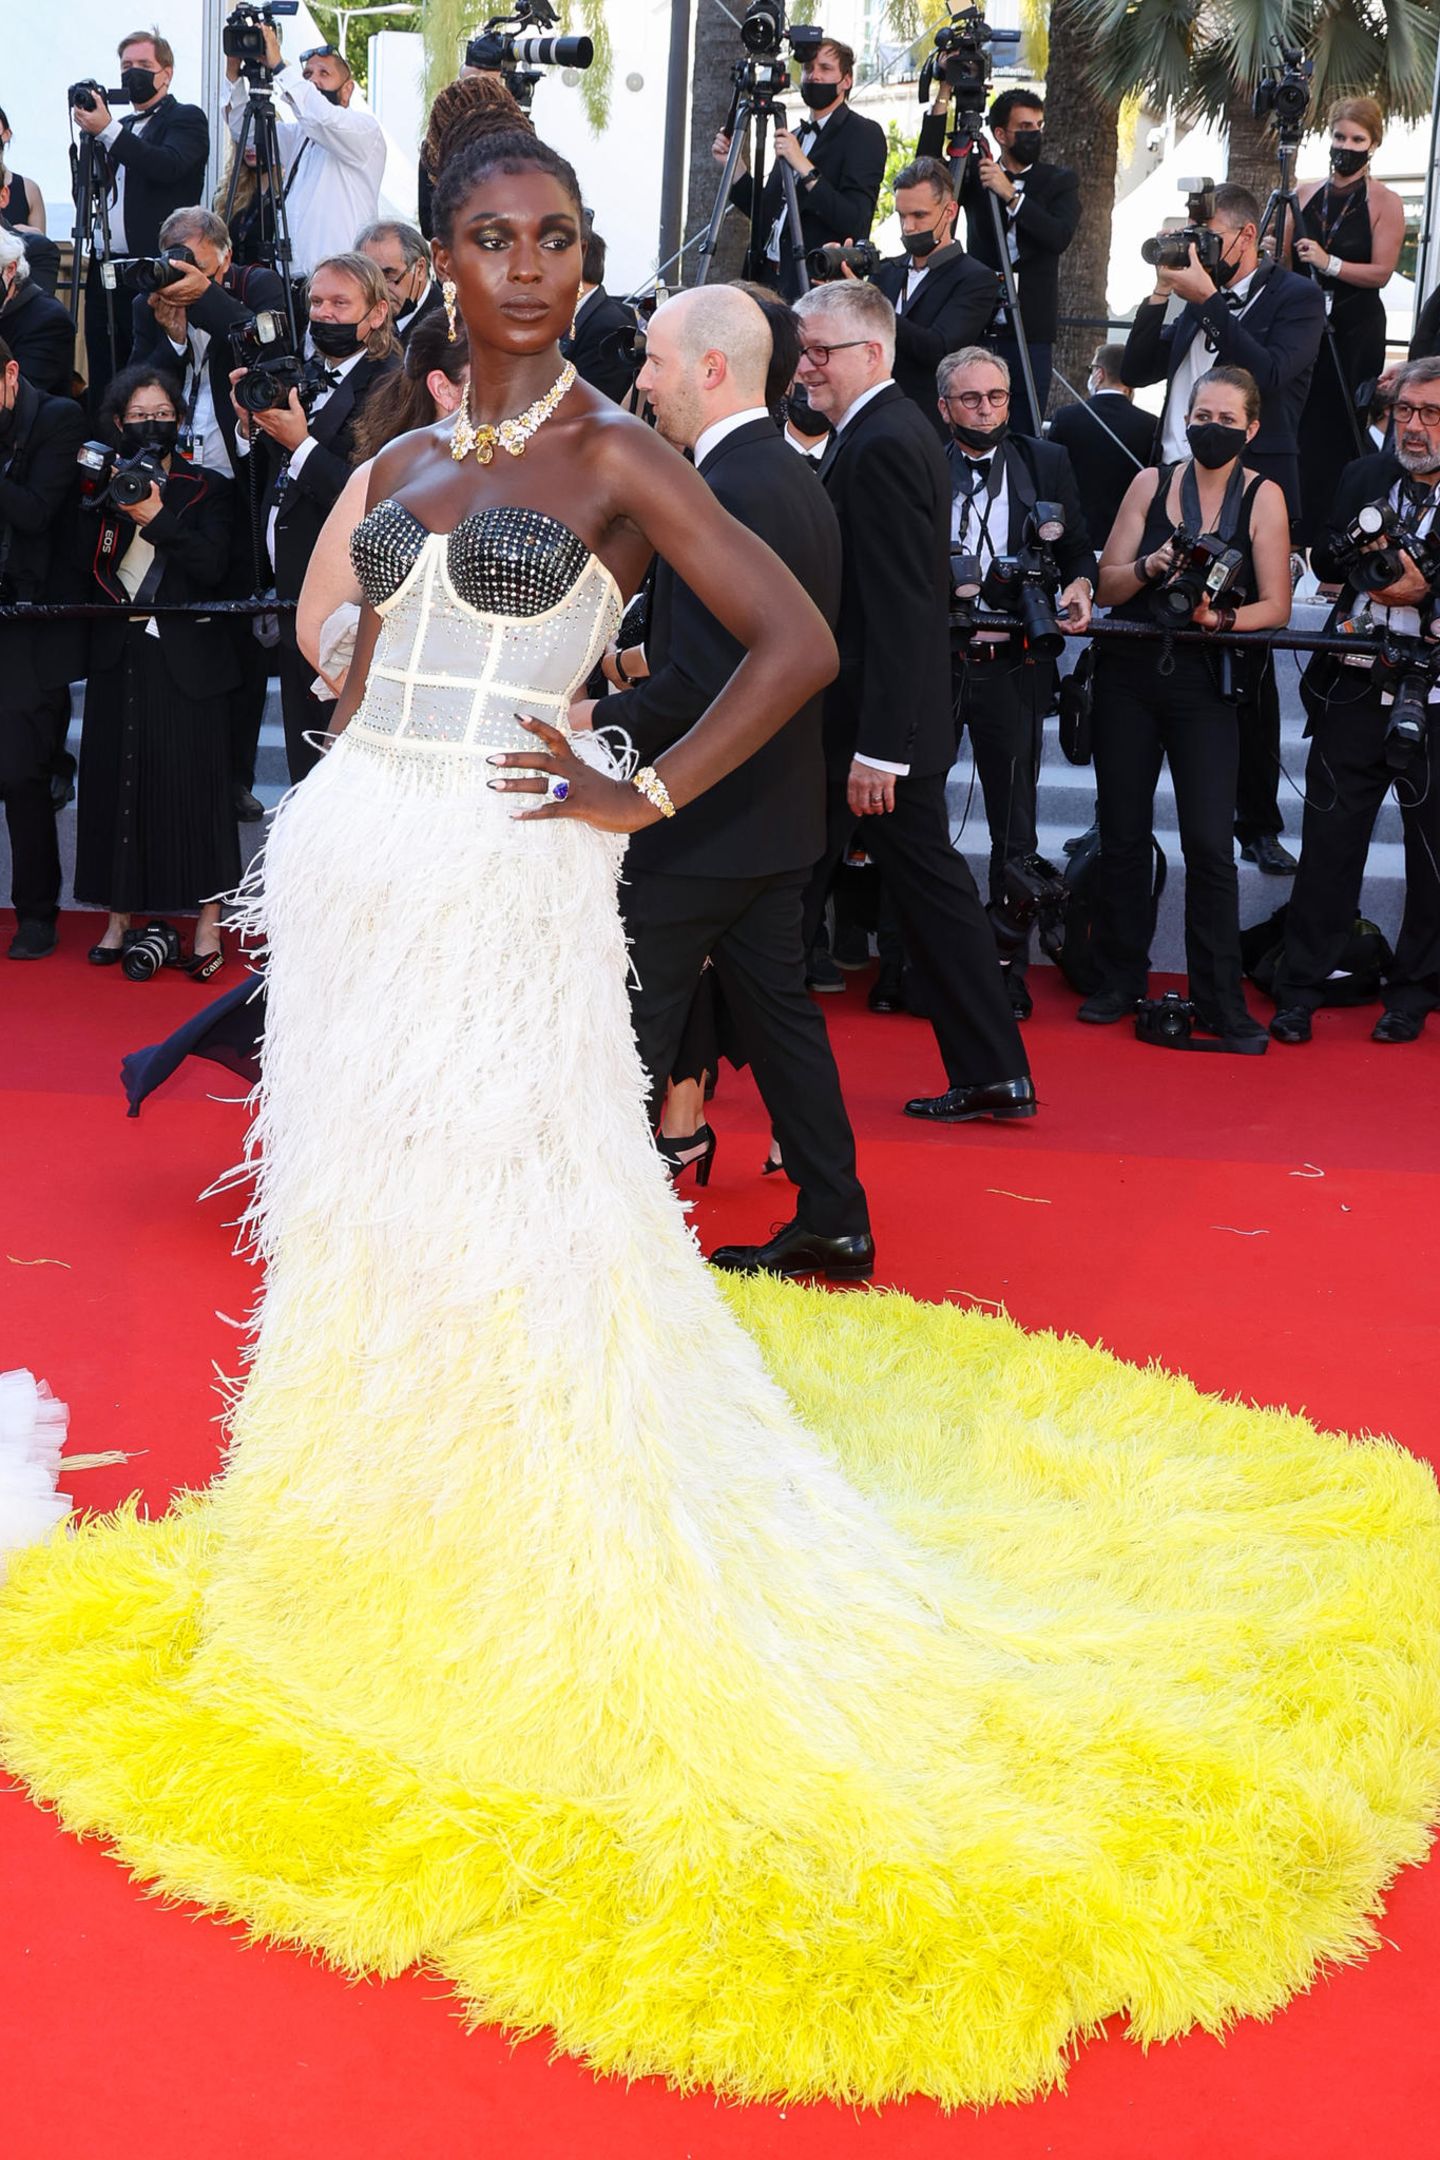 Einen der Highlight-Looks der Filmfestspiele in Cannes 2021 trug Jodie Turner-Smith. Die Schauspielerin erschien in einer Wow-Robe mit Federapplikationen und transparenter Stäbchen-Corsage, das extra vom italienischen Modehaus Gucci für sie angefertigt wurde.